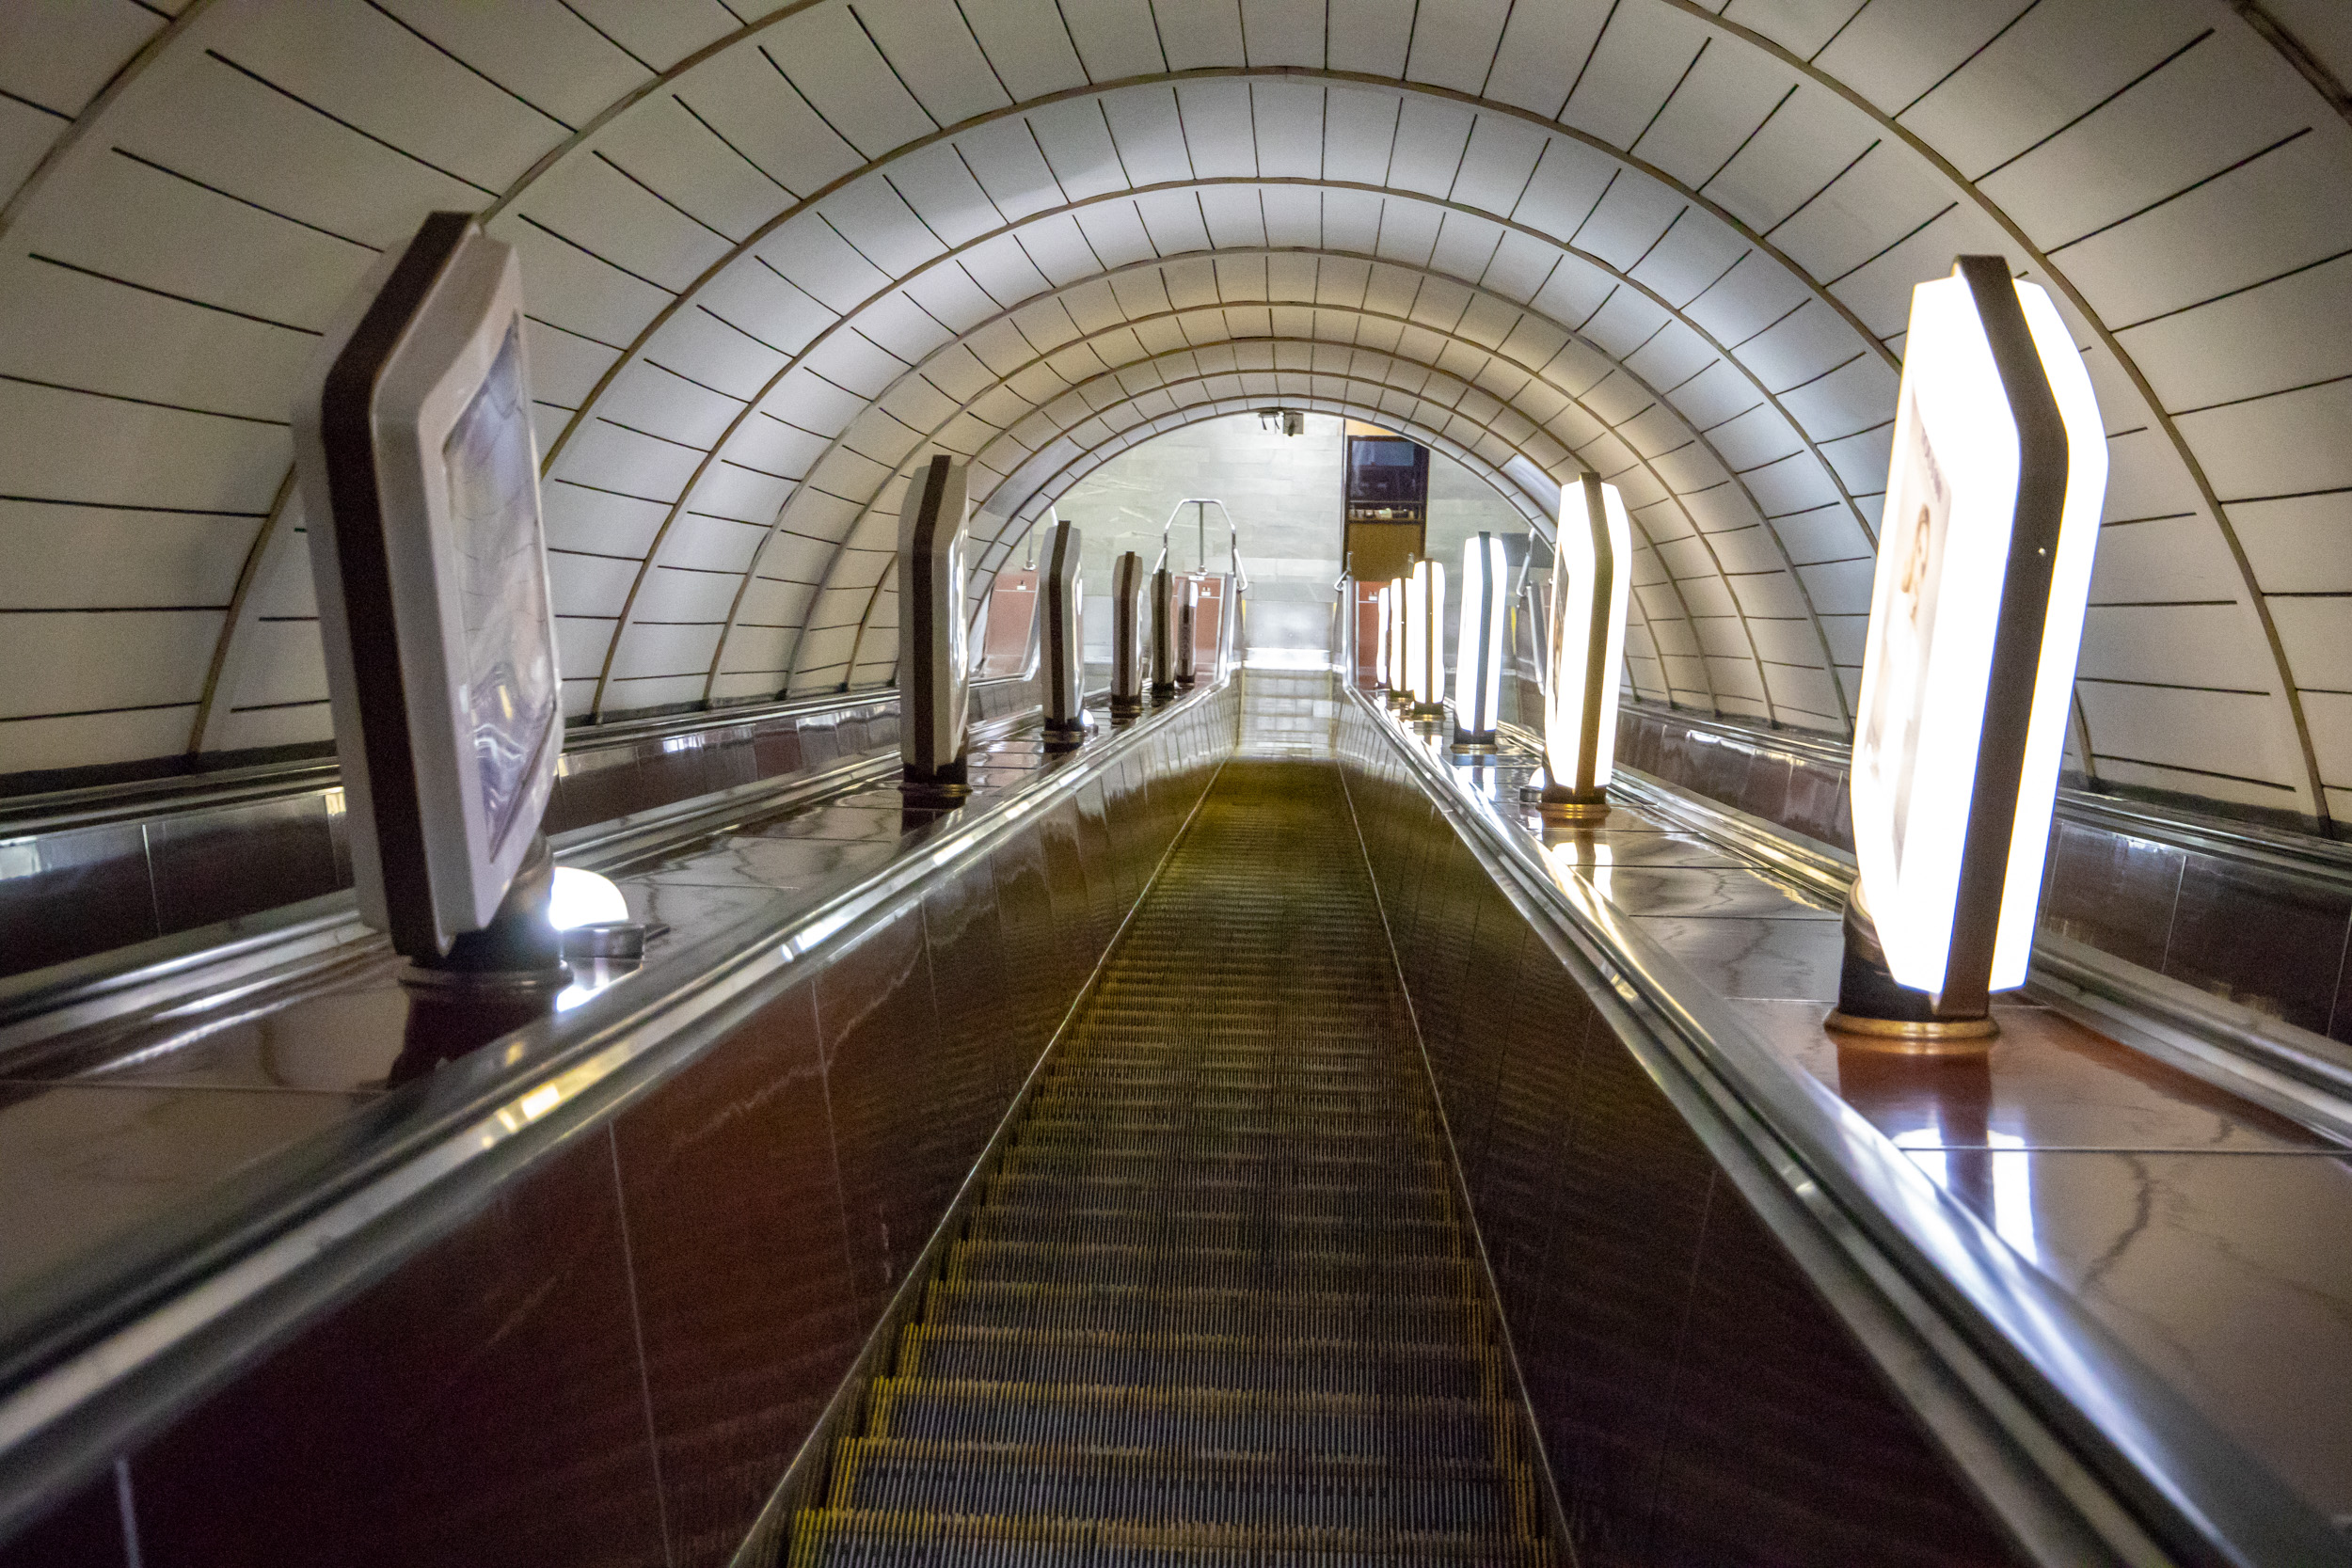 Відзавтра, 19 березня, на станції метро “Шулявська” розпочнеться капітальний ремонт ескалатора